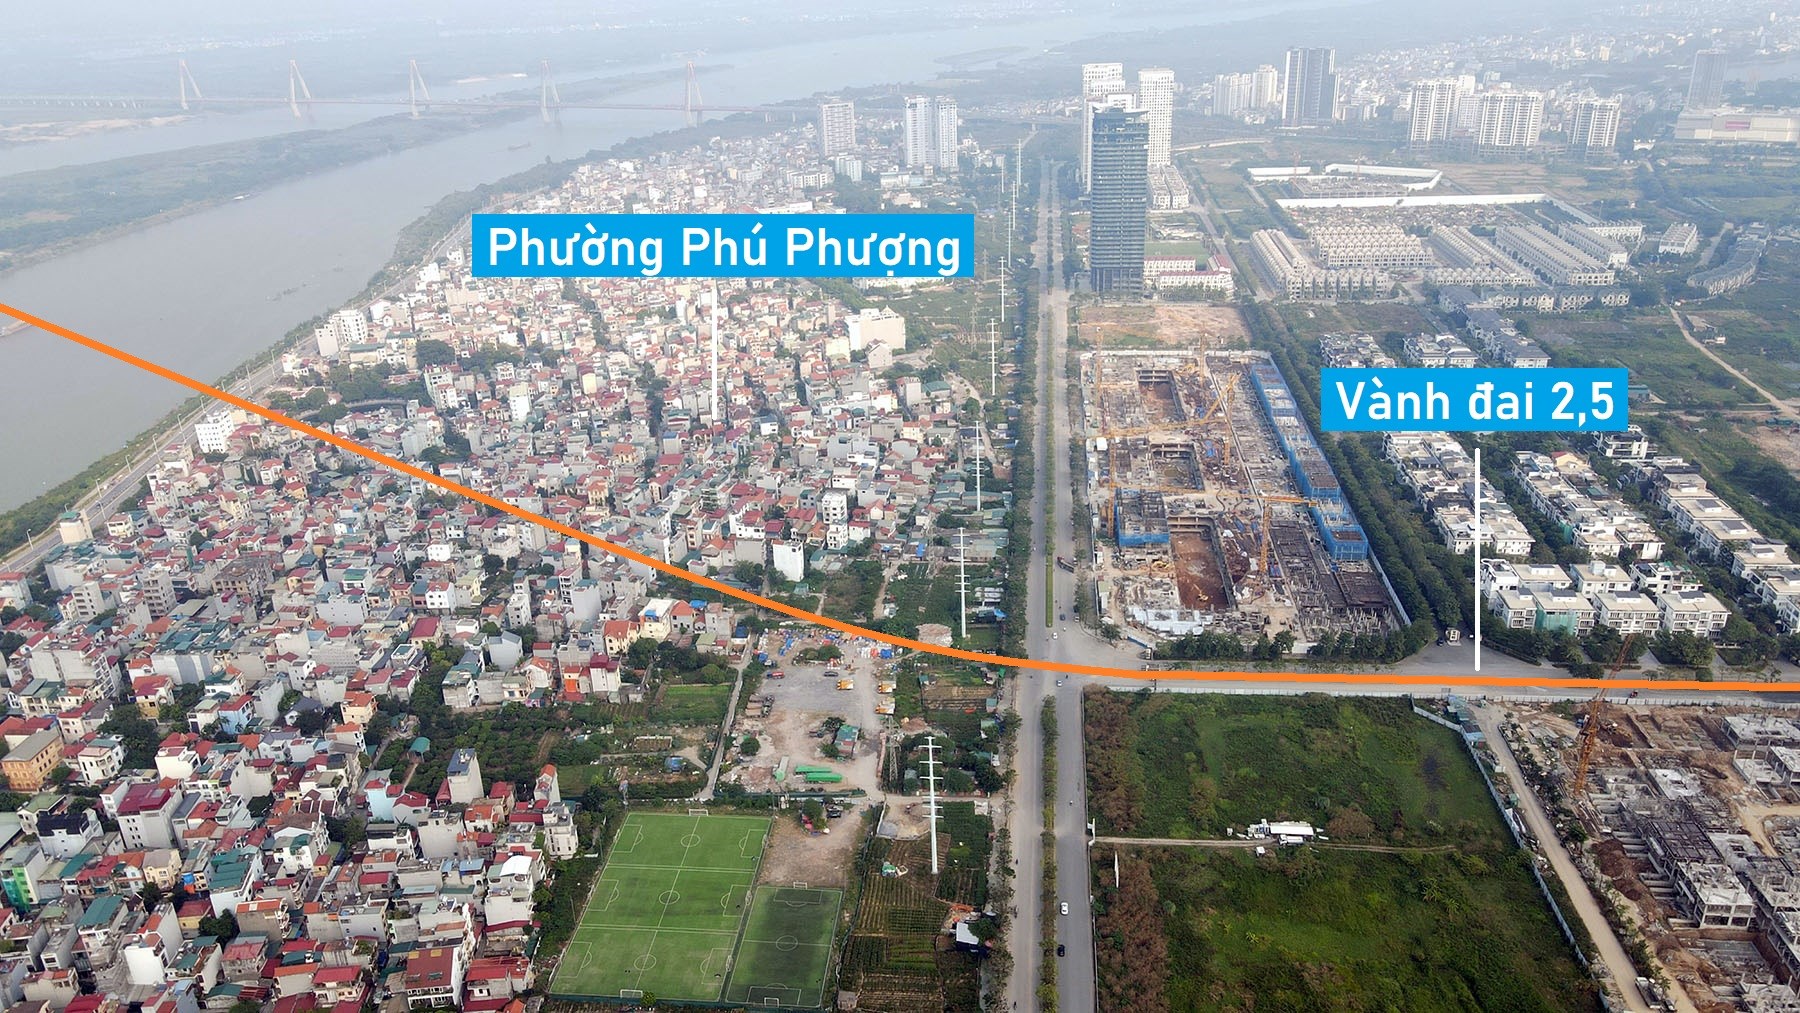 Toàn cảnh vị trí đề xuất xây cầu vượt sông Hồng trên đường Vành đai 2,5 nối Tây Hồ - Đông Anh, Hà Nội